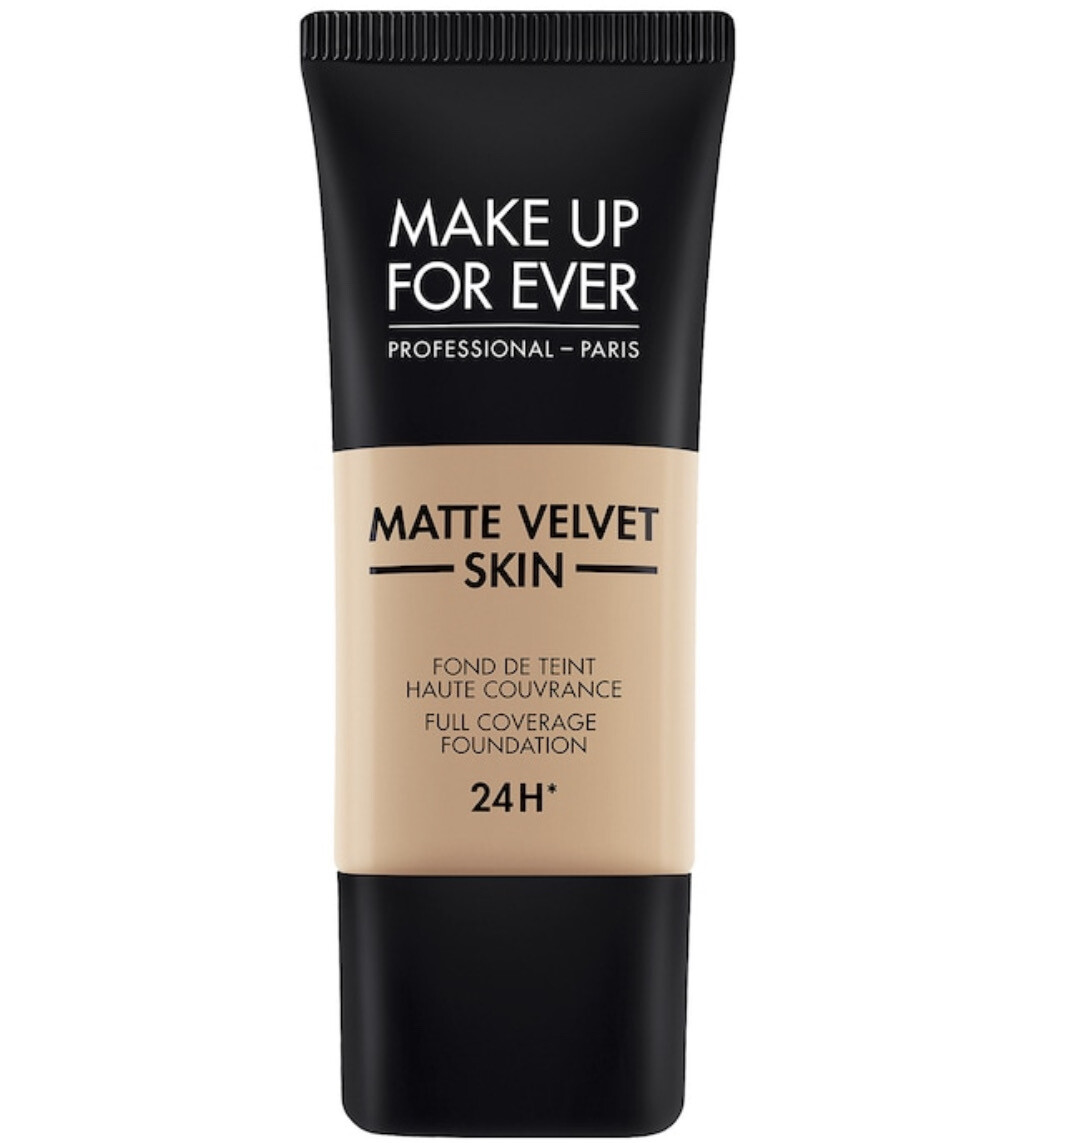 Make Up For Ever - Matte Velvet Skin Full Coverage Foundation | Y325 Flesh - for lighter medium skin with slightly peach undertones